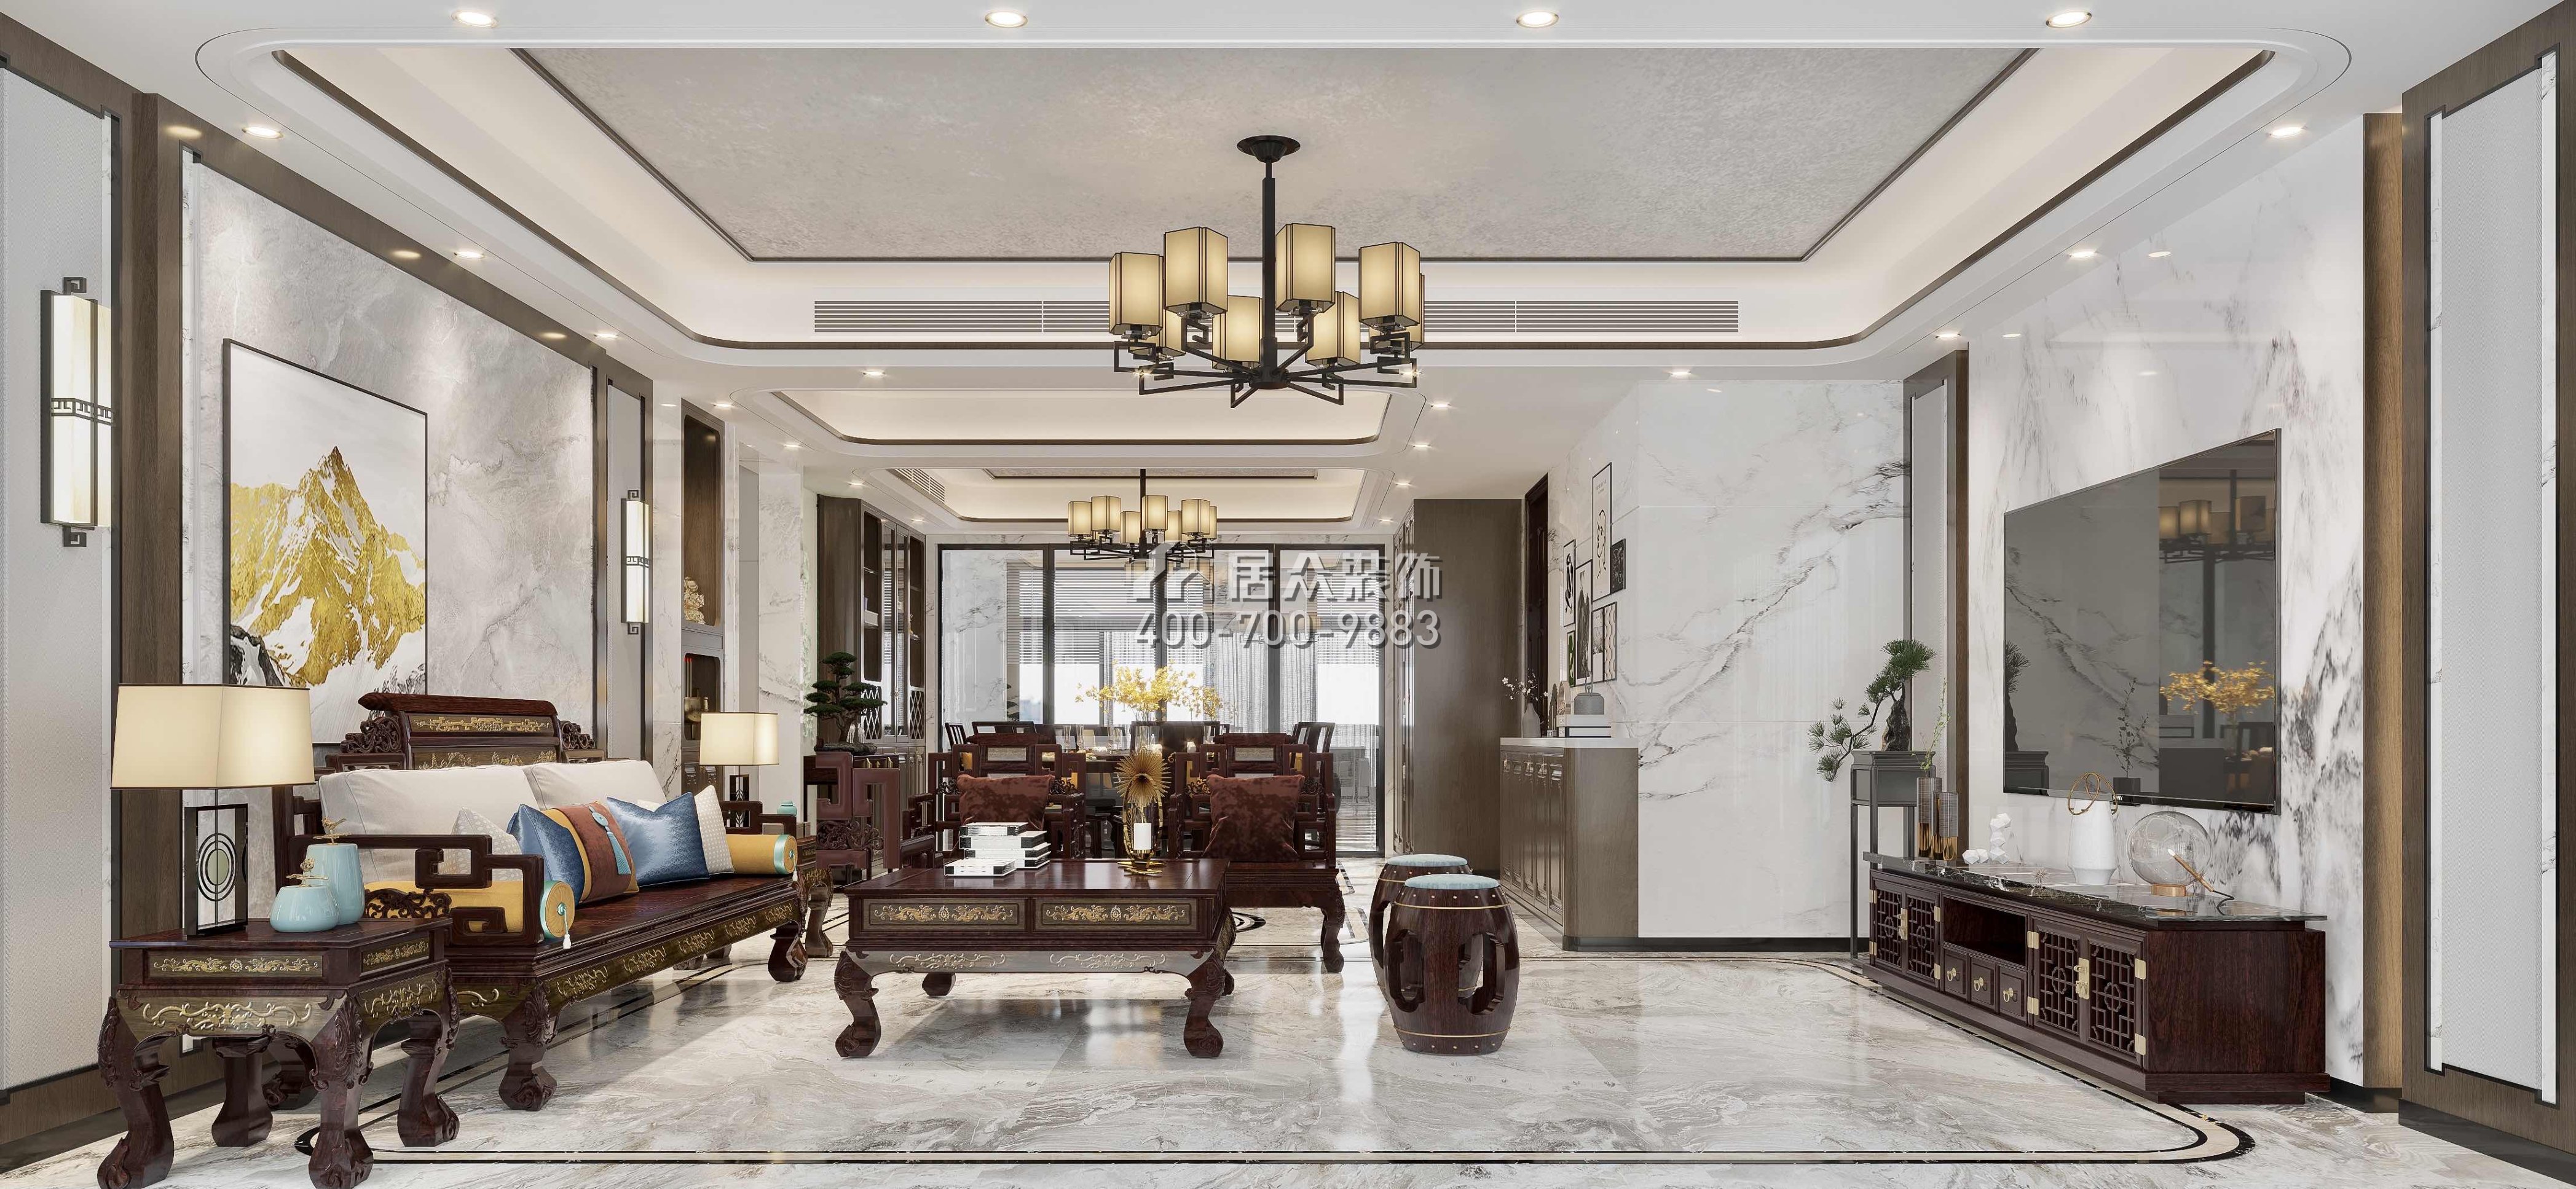 光華園176平方米中式風格平層戶型客廳裝修效果圖